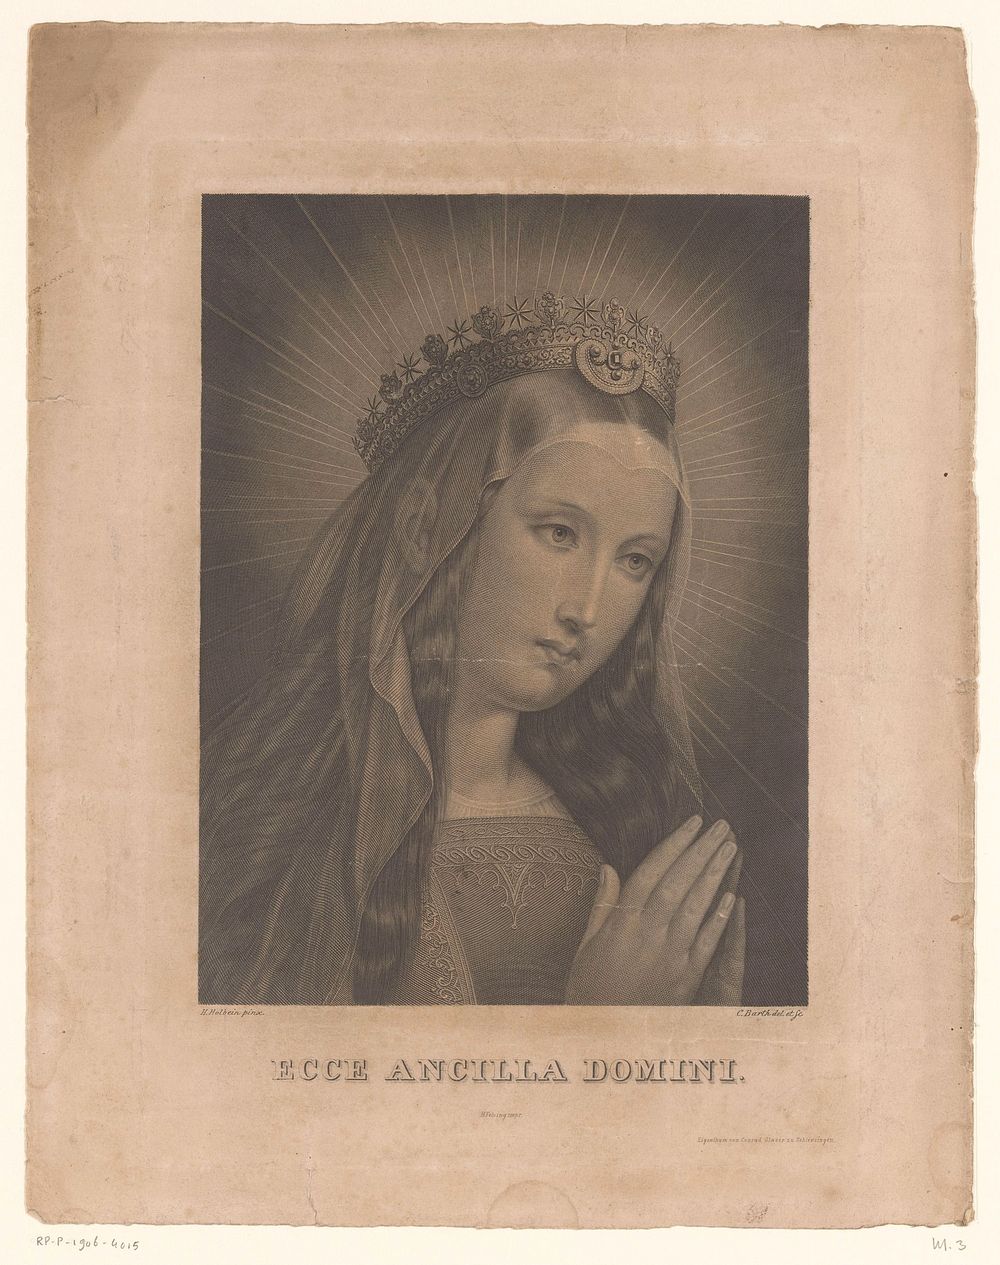 Maria in biddende houding (1833 - 1853) by Karl Barth, Karl Barth, Hans Holbein II, Johann Heinrich Felsing and Conrad Glaser